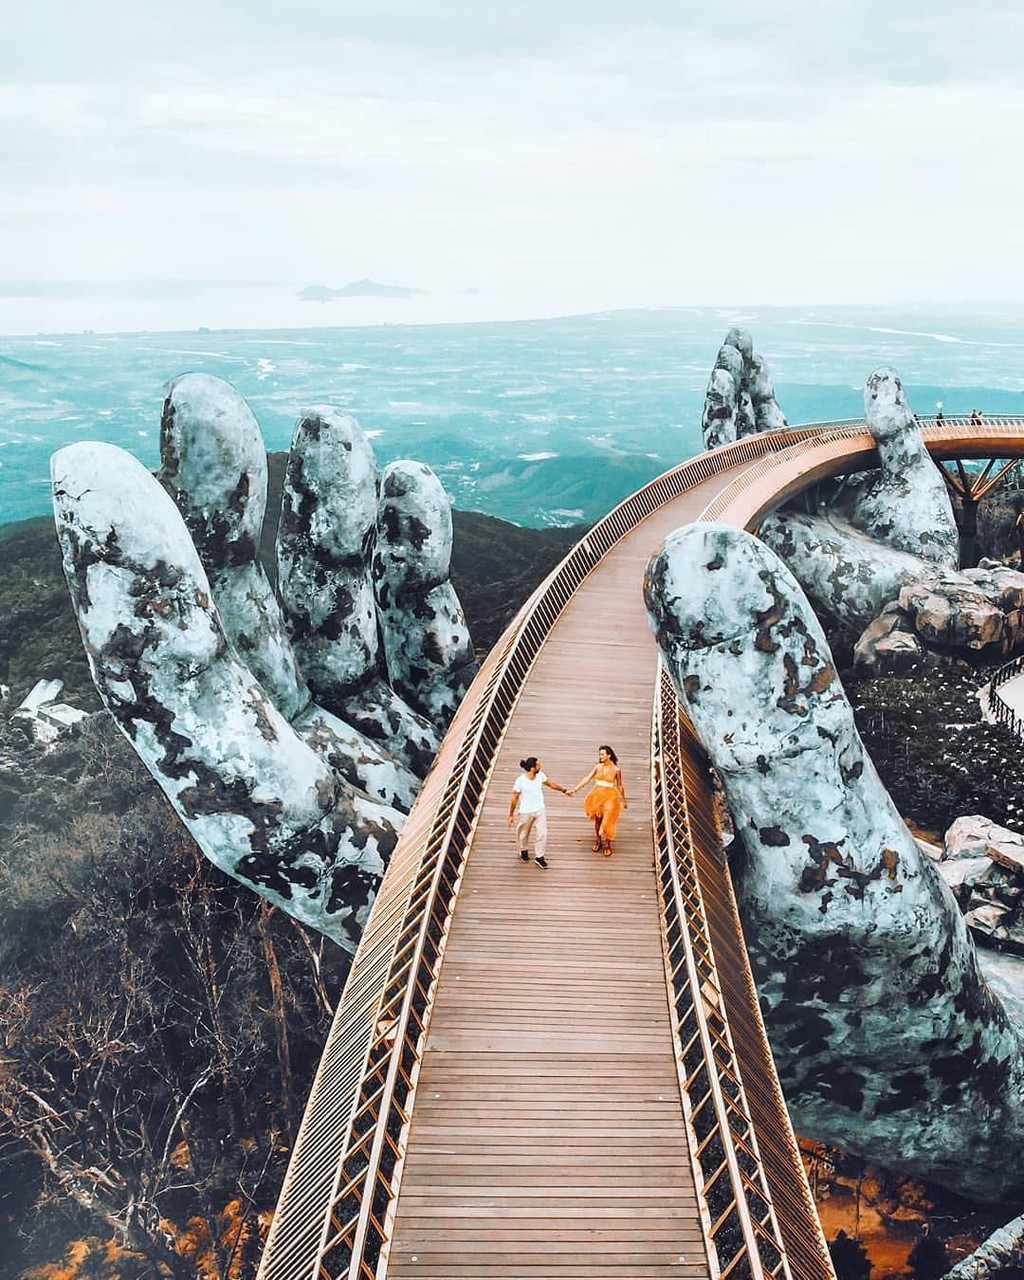 Ái Thủy - nữ kiến trúc sư tạo nên cây Cầu Vàng “made in Vietnam” làm kinh ngạc khắp thế giới và lần đầu nghe kể về ý nghĩa thật sự của đôi bàn tay khổng lồ - Ảnh 7.